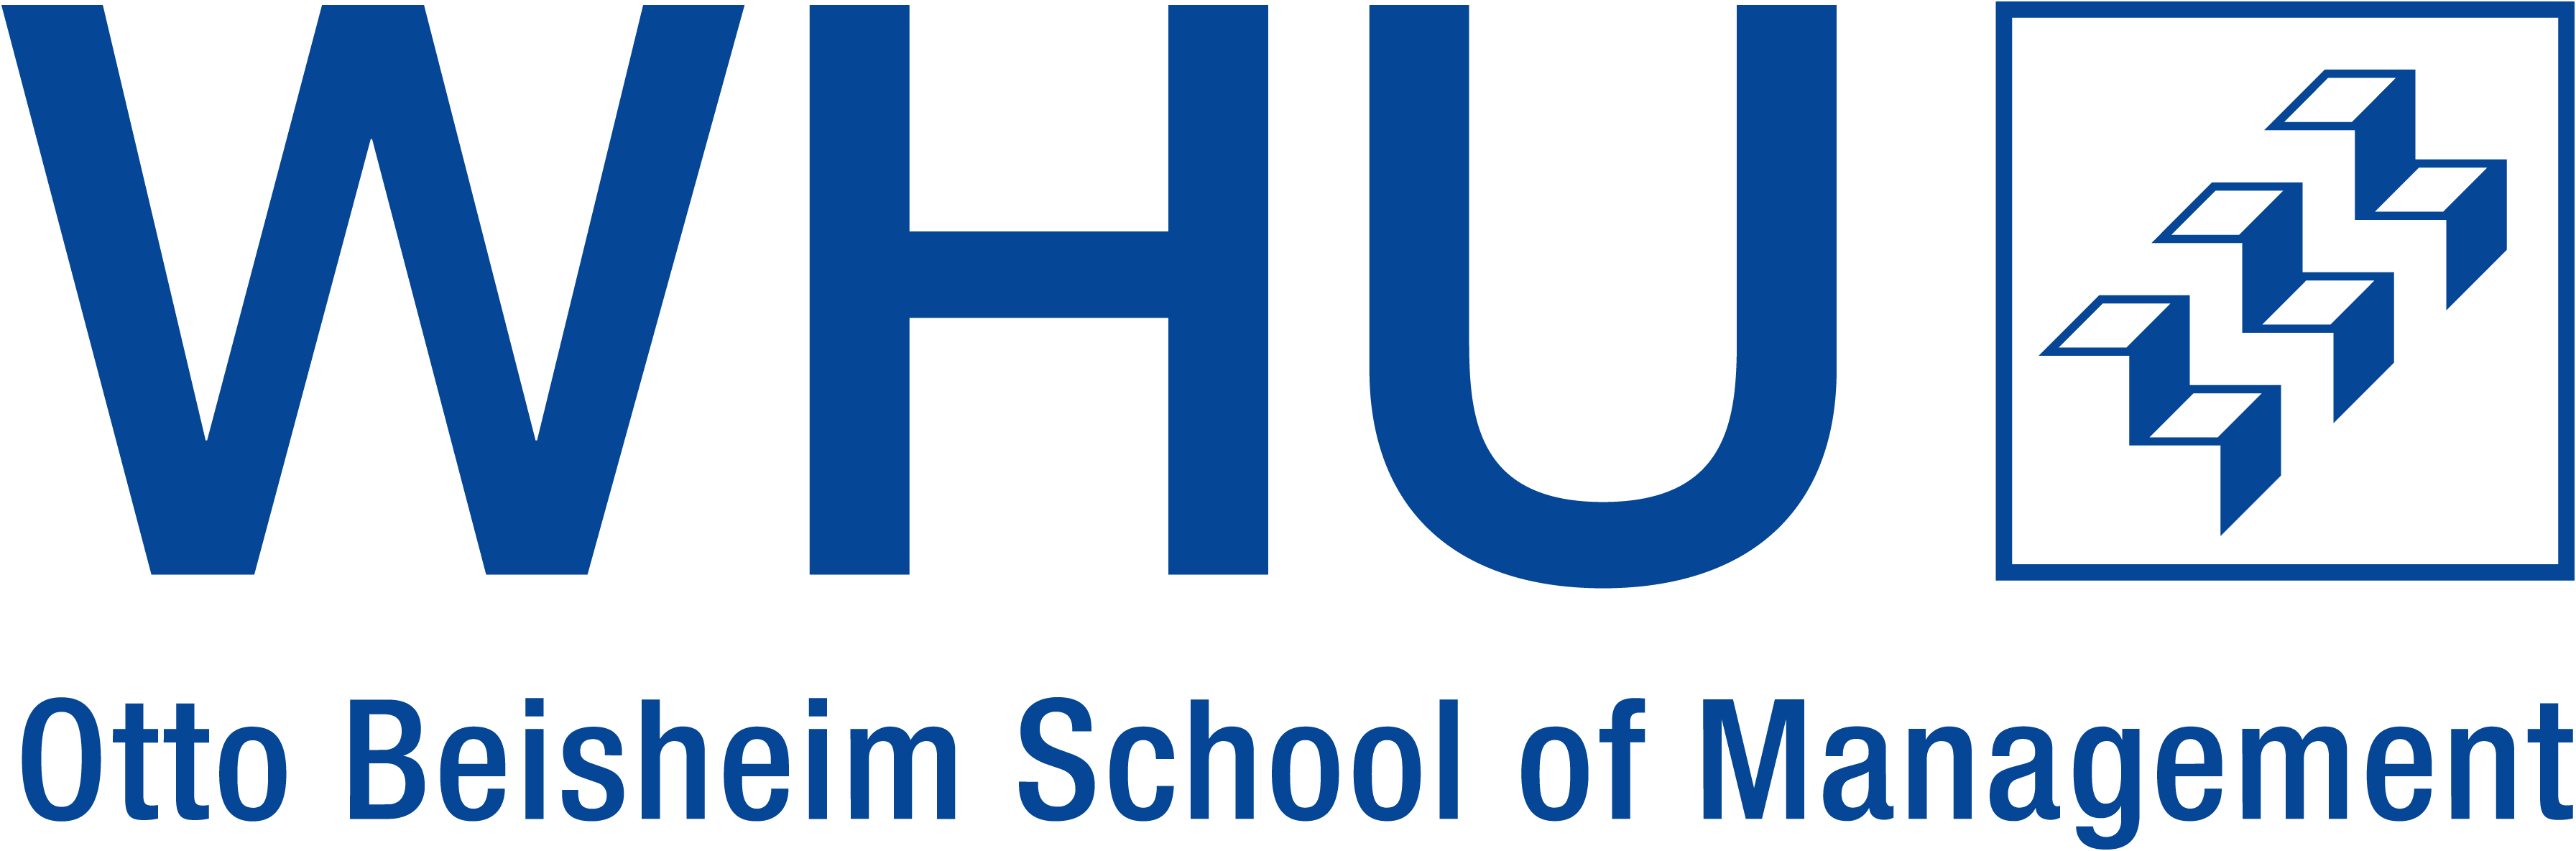 WHU – Otto Beisheim School of Management's logo